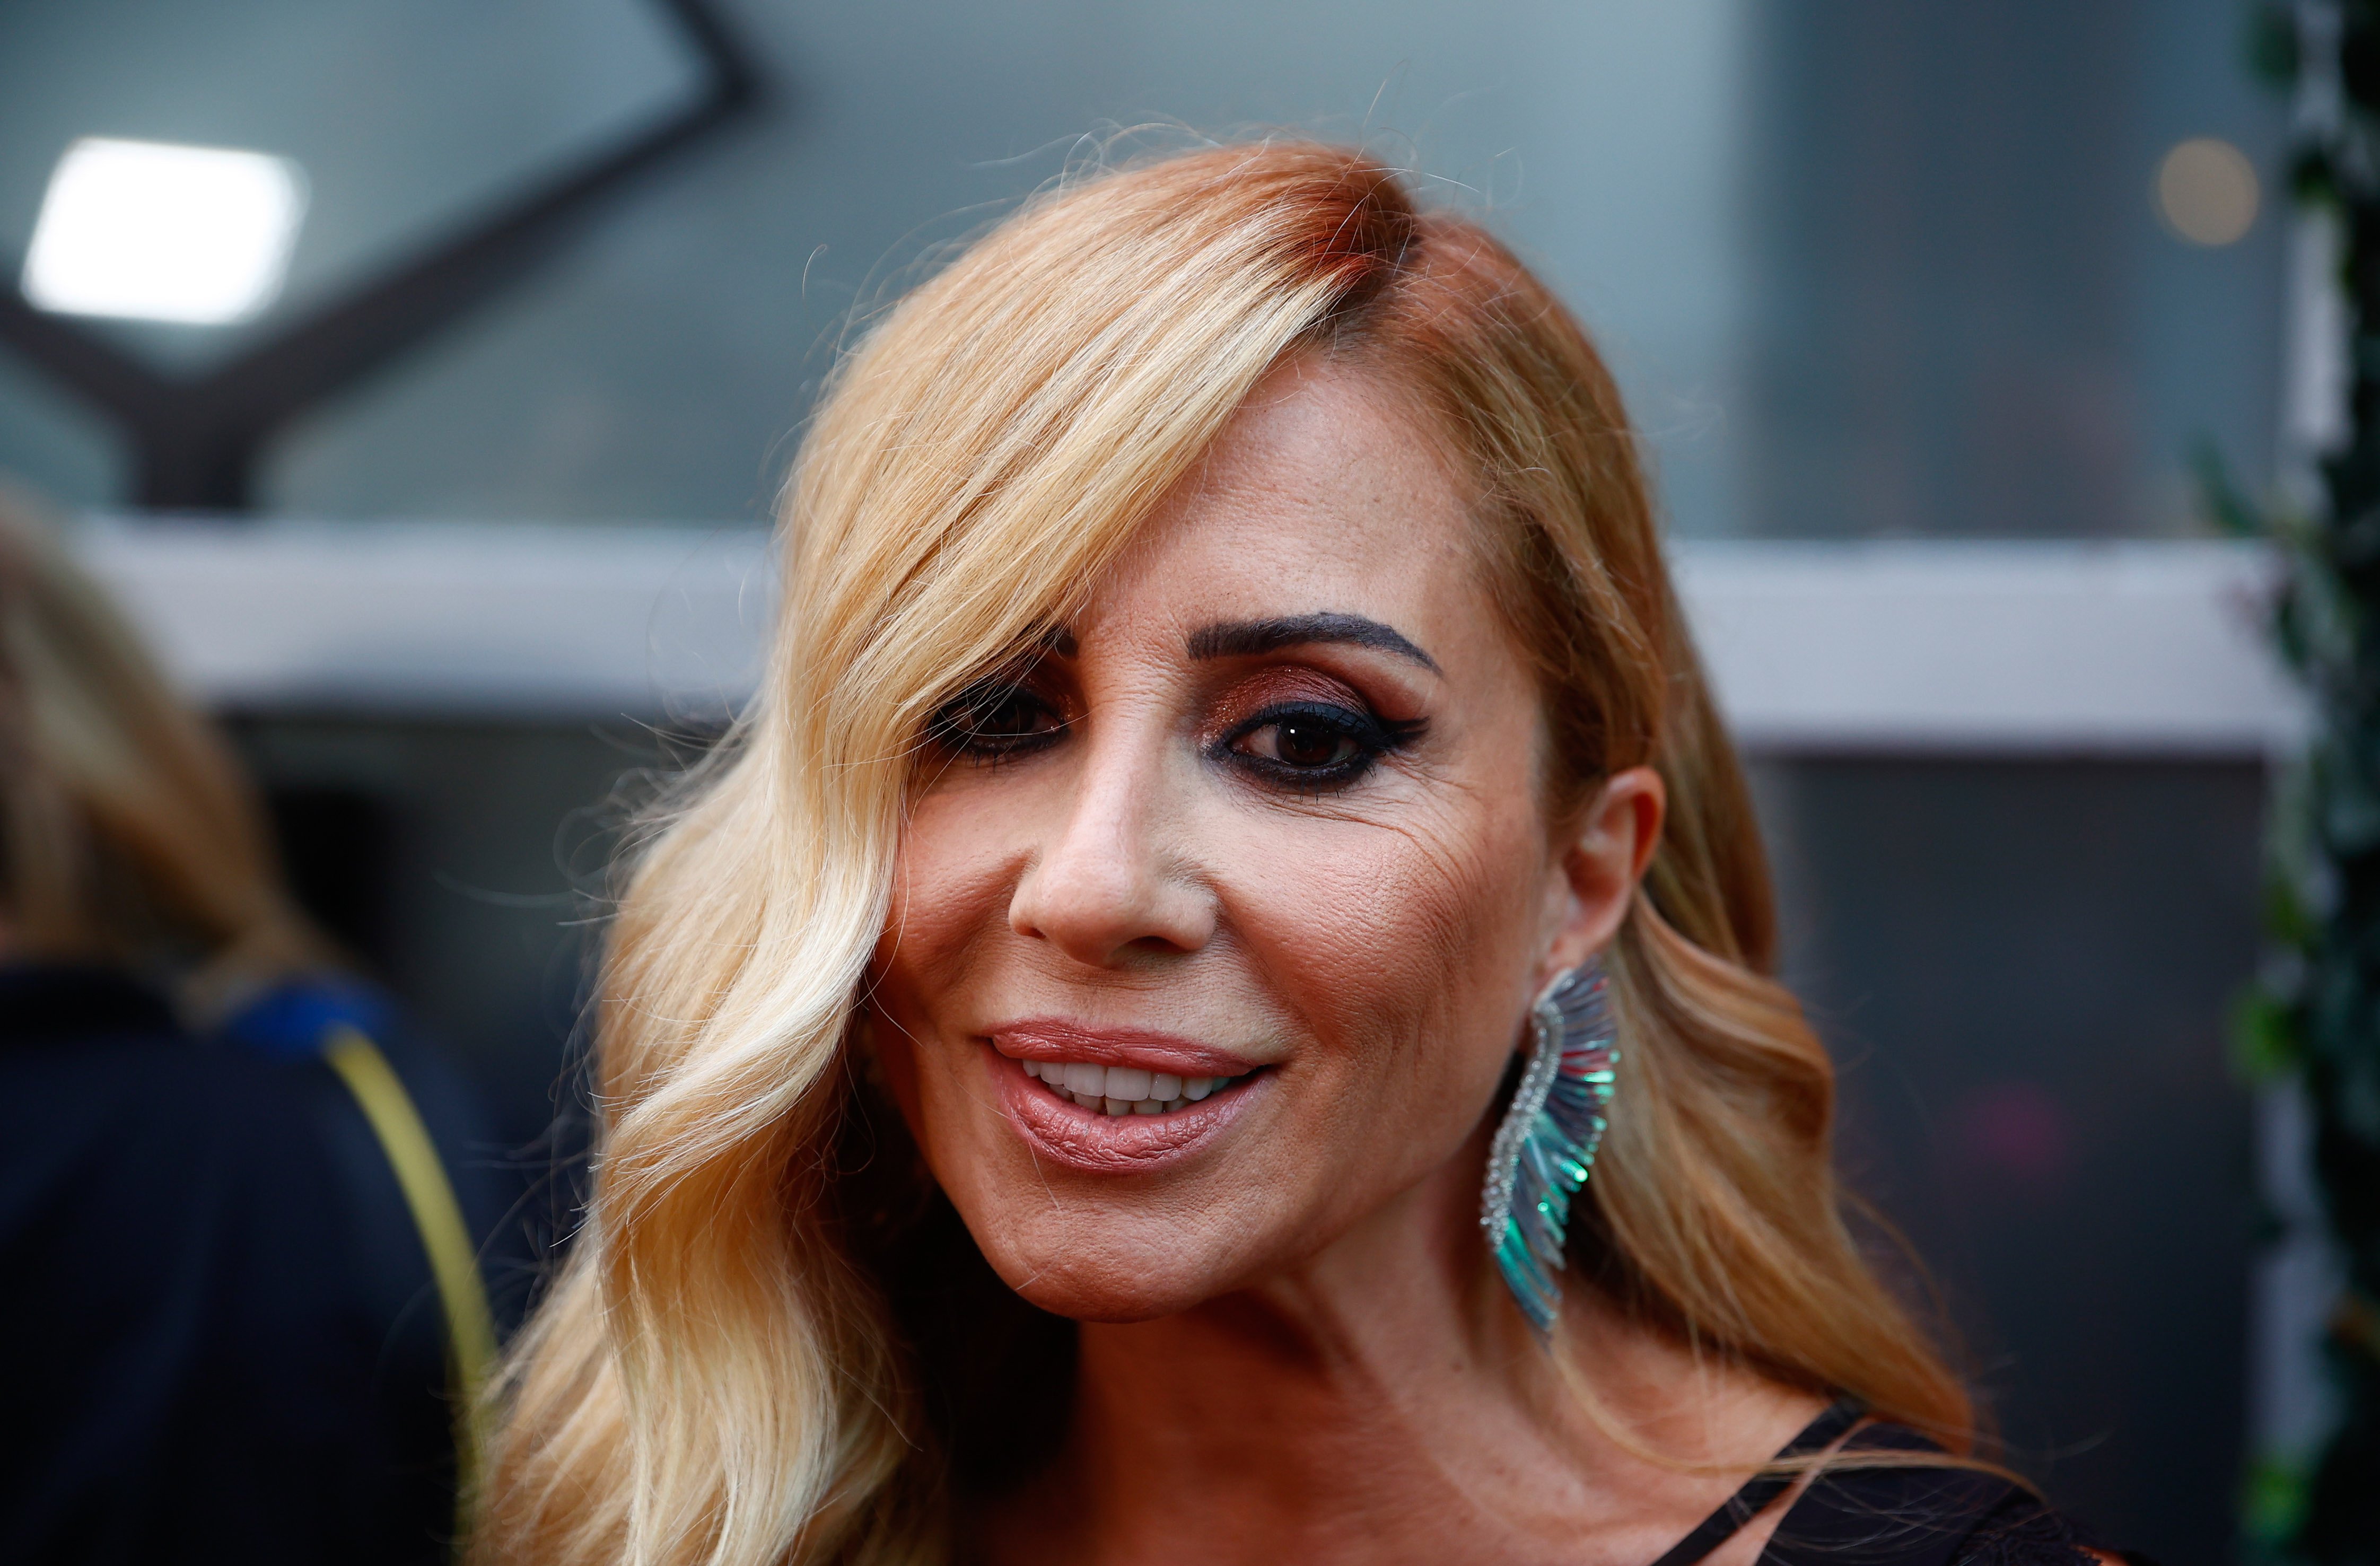 Marta Sánchez ja no té aquesta cara: operada i irreconeixible, és una altra persona